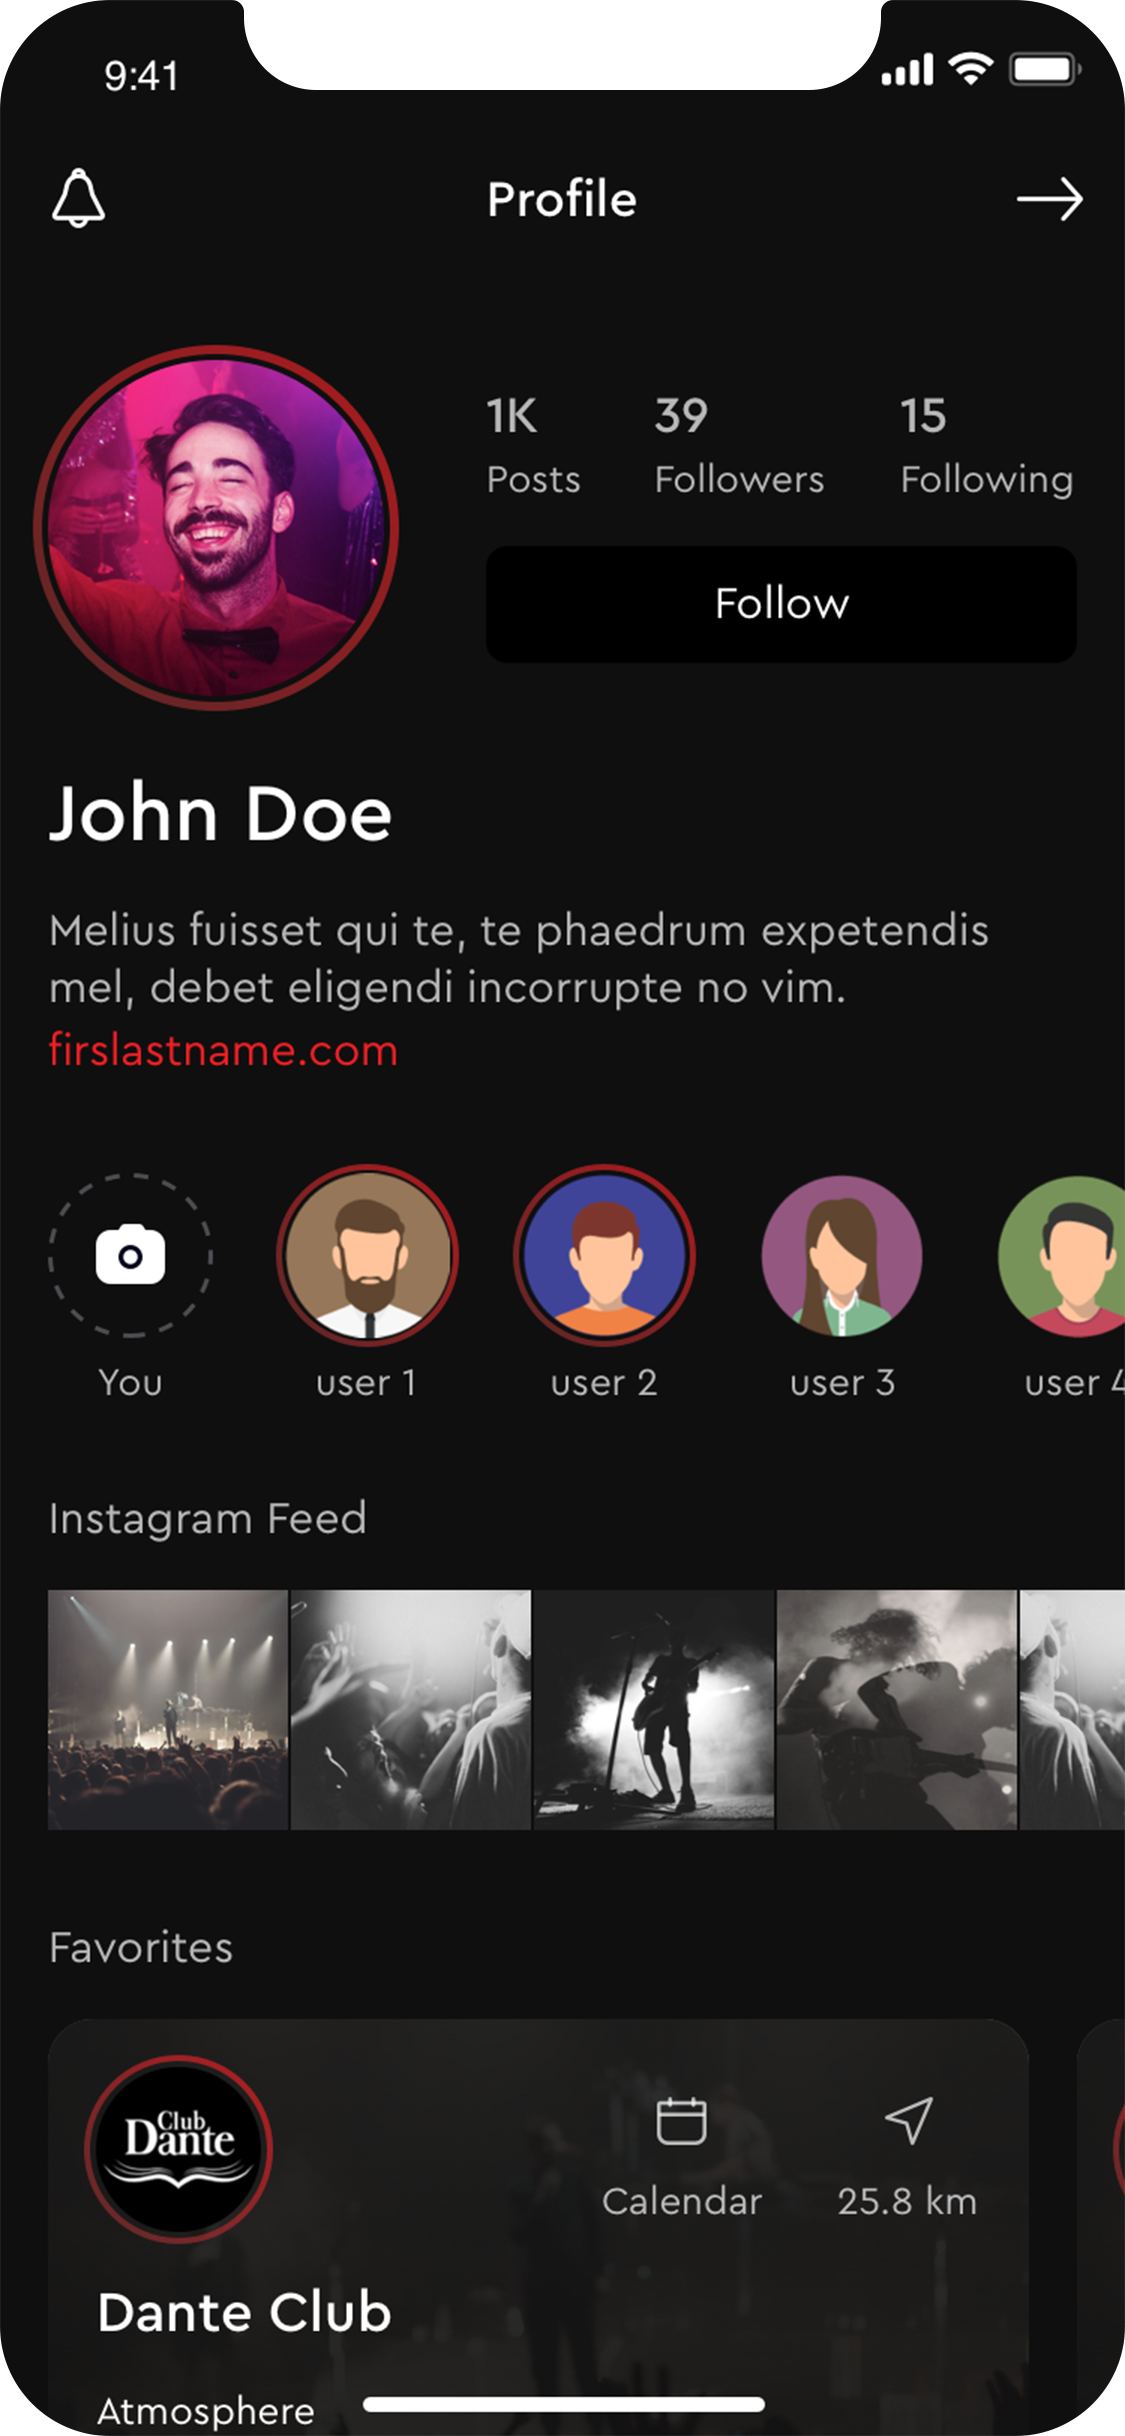 nightlifemuseum Profile in iPhone X.